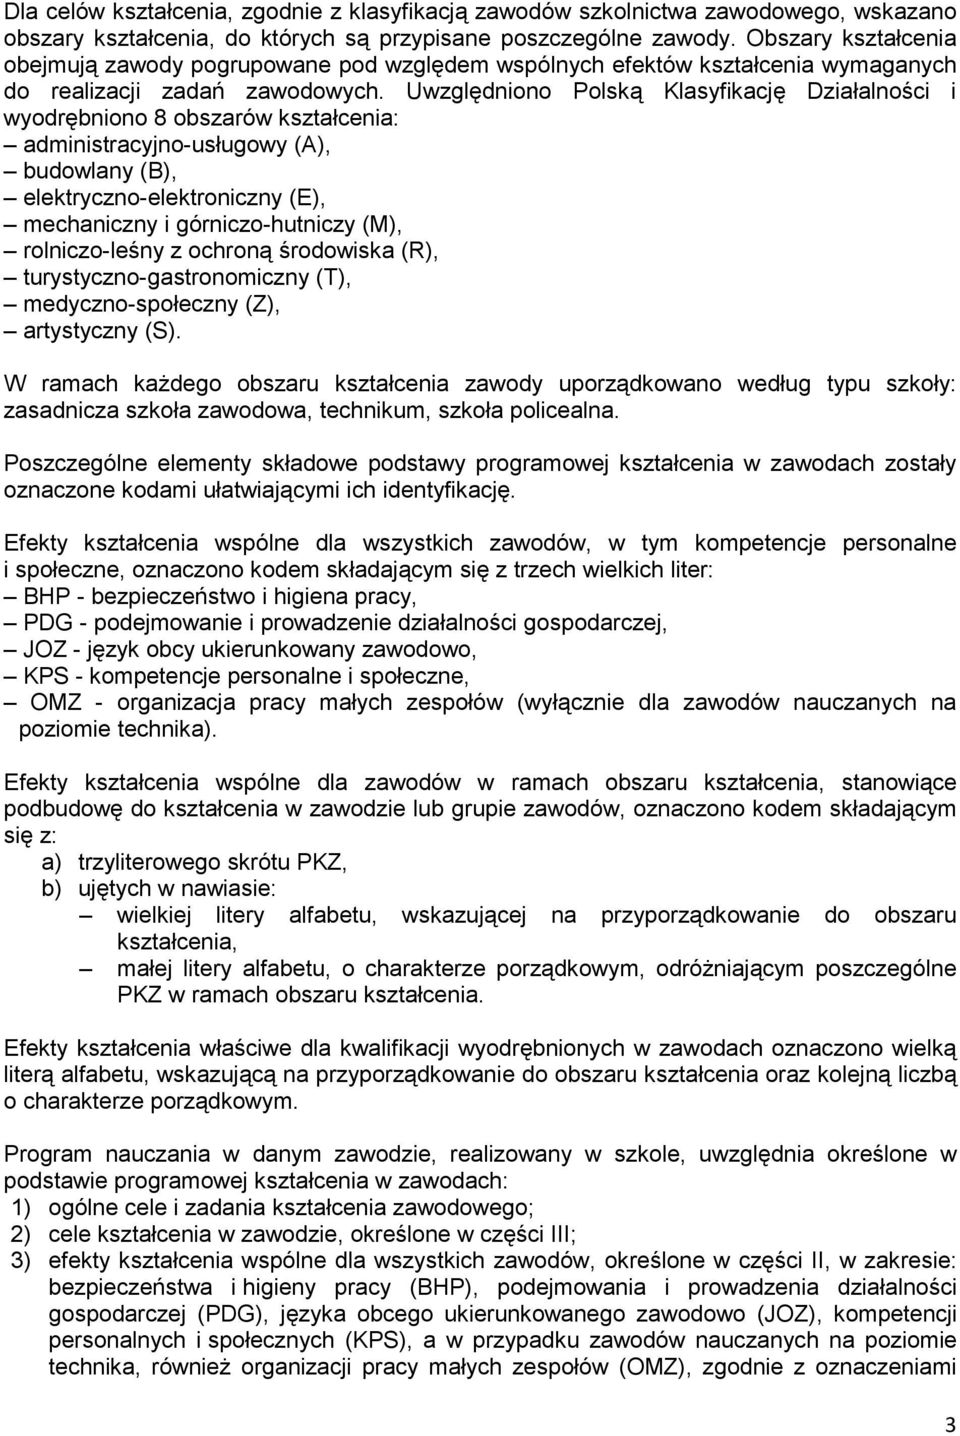 Uwzględniono Polską Klasyfikację Działalności i wyodrębniono 8 obszarów kształcenia: administracyjno-usługowy (A), budowlany (B), elektryczno-elektroniczny (E), mechaniczny i górniczo-hutniczy (M),